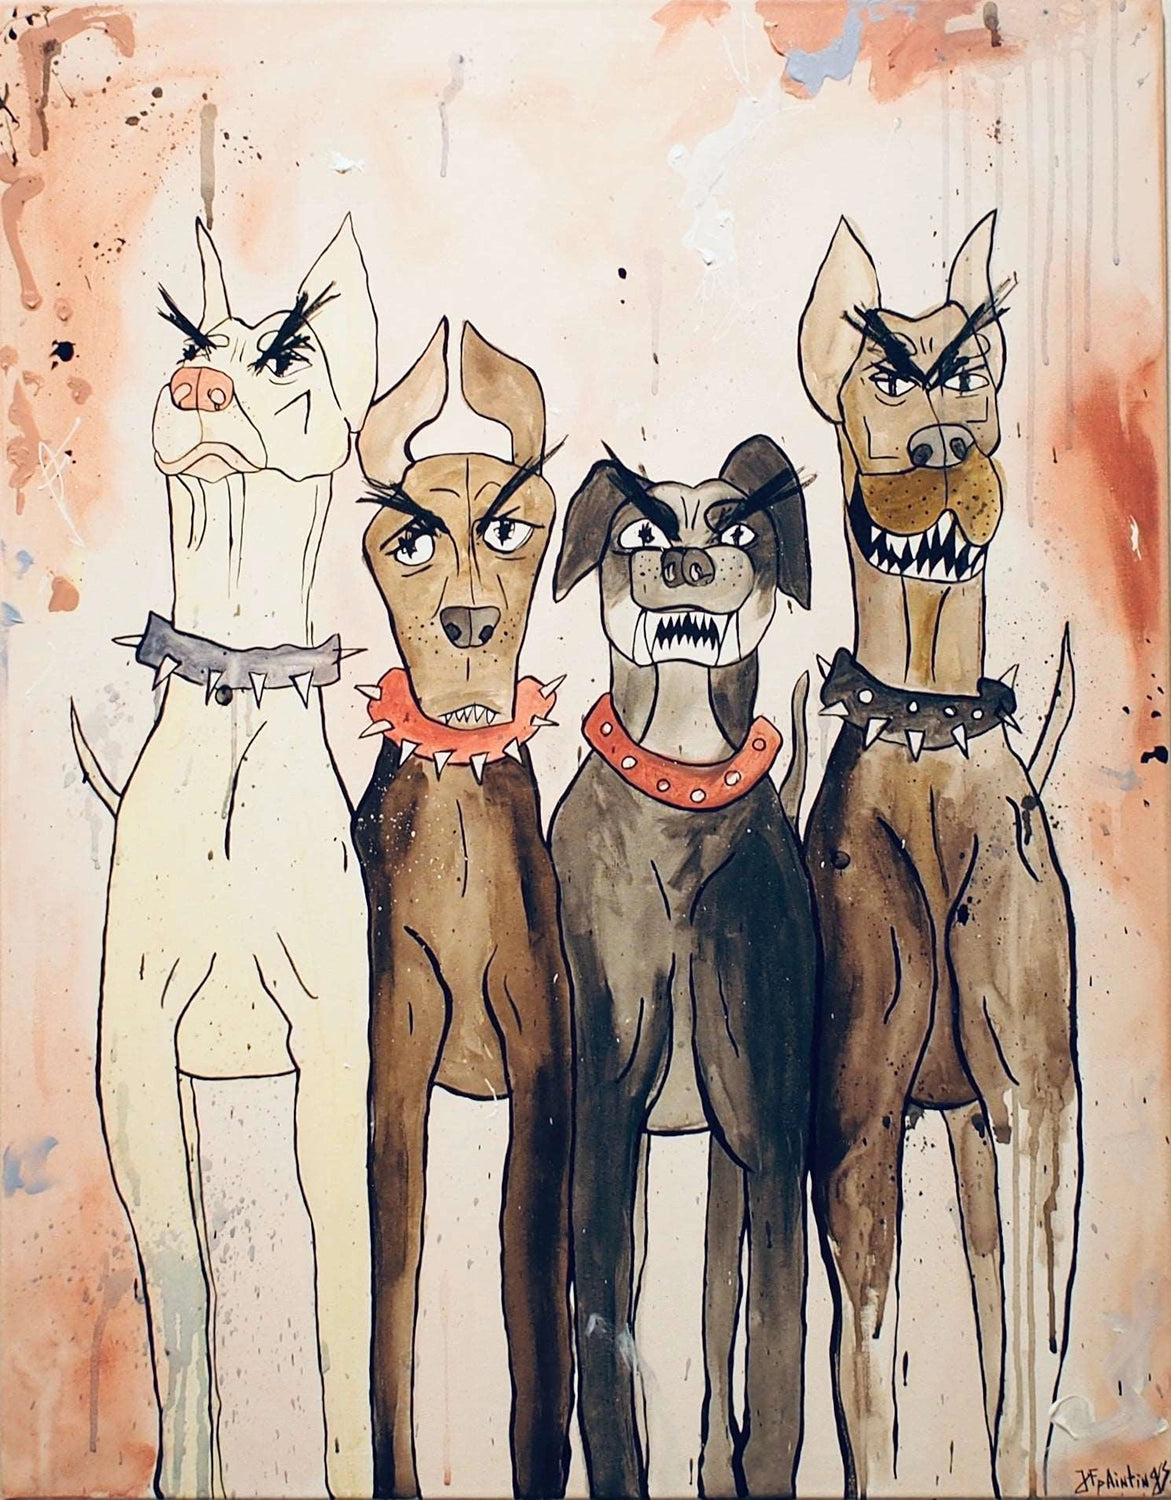 Kunstverket 4 Dogs av Julia Flak kan ses på Galleri M35